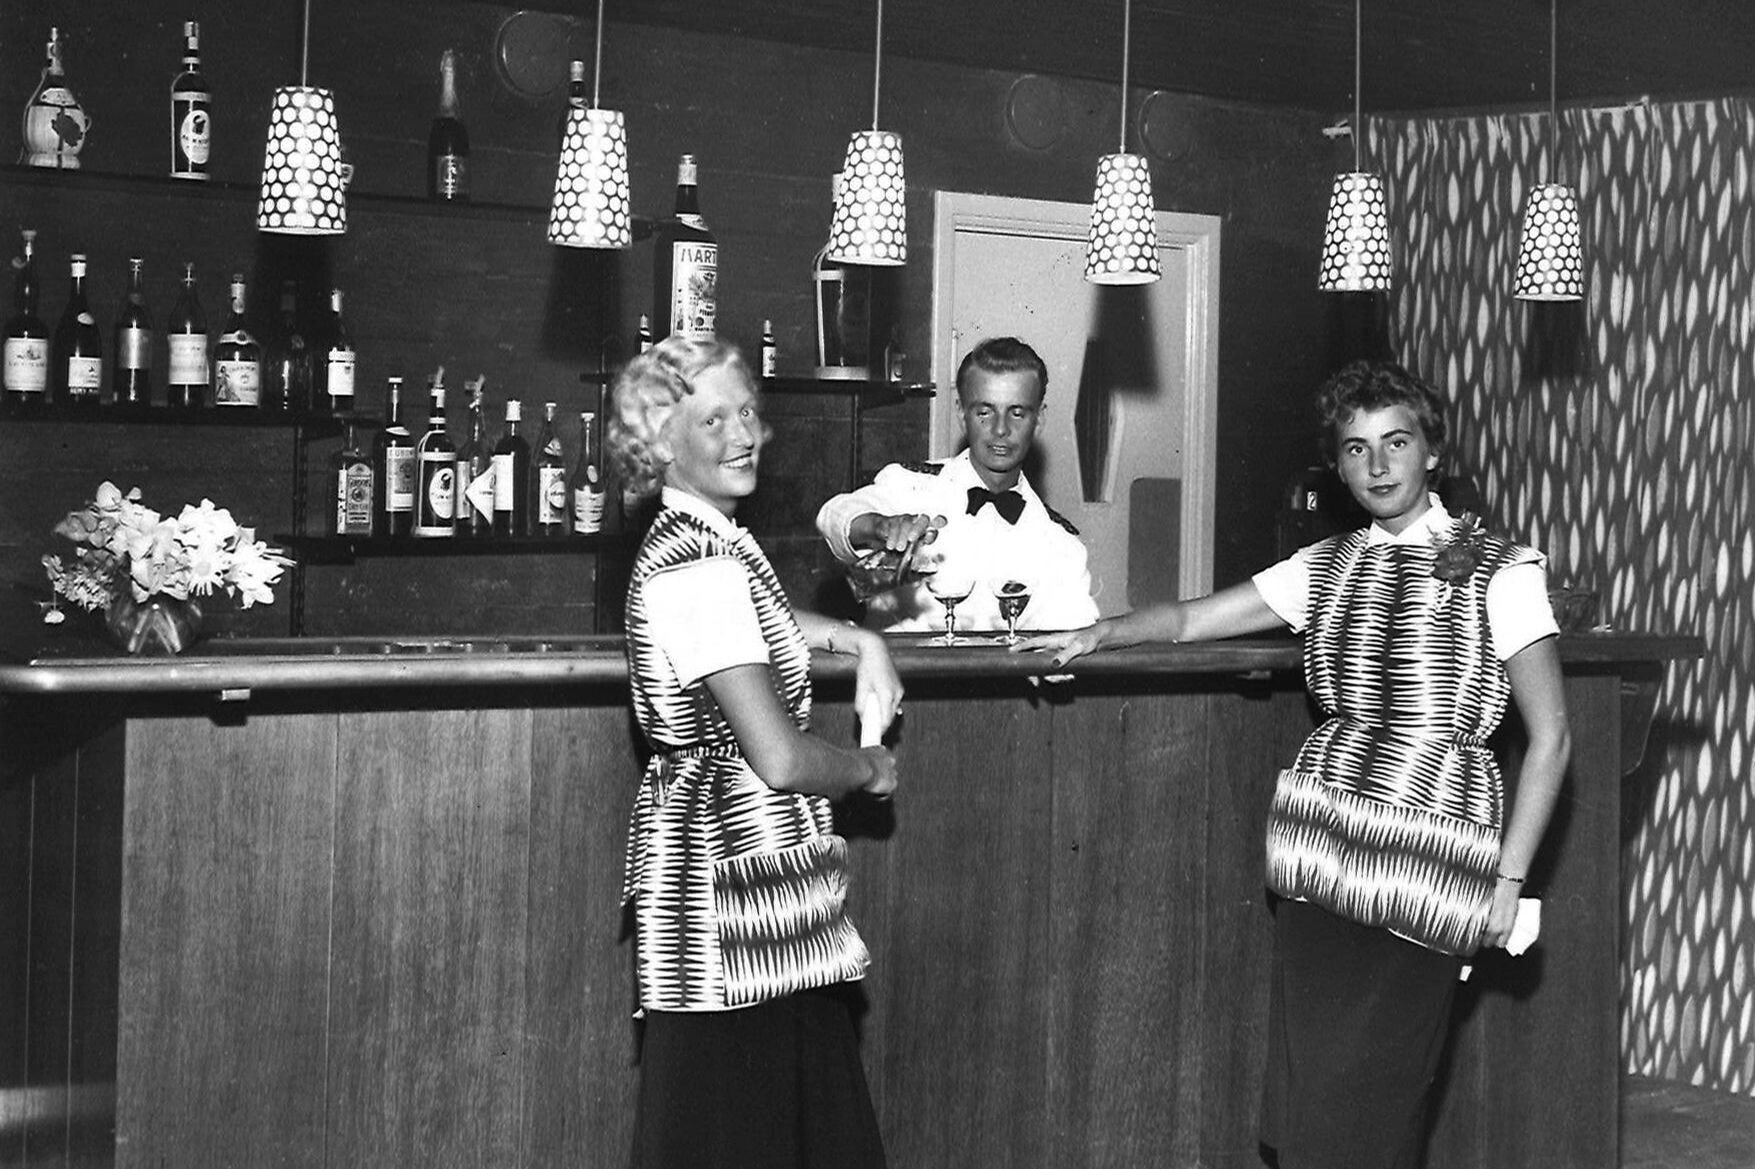 Tylöhus Serveringspersonal 1950-talet